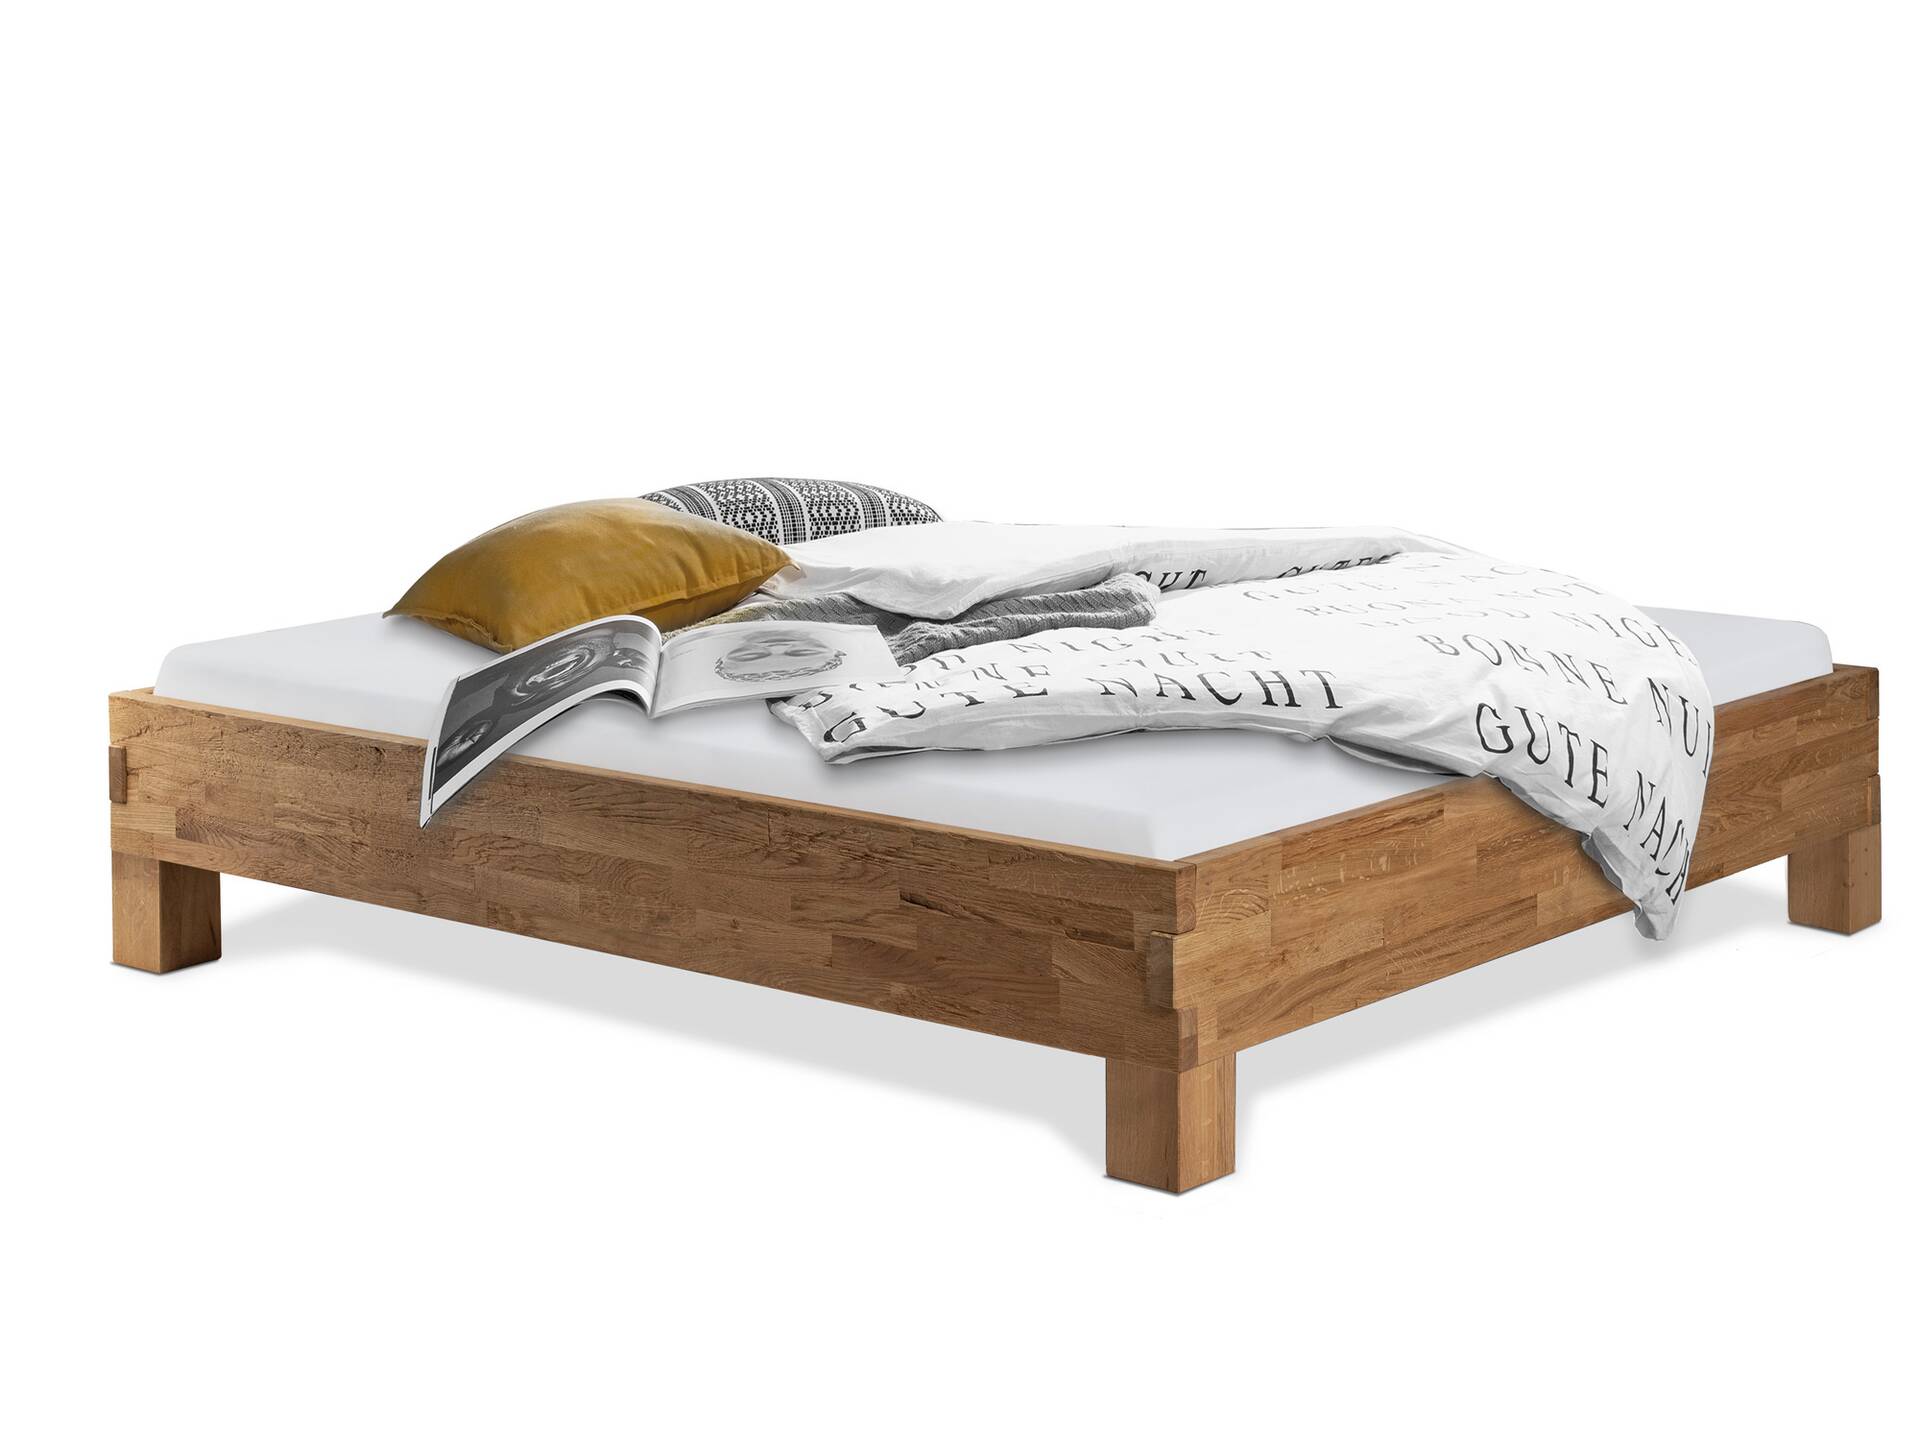 CORDINO 4-Fuß-Bett aus Eiche, Material Massivholz, mit/ohne Kopfteil 140 x 220 cm | Eiche unbehandelt | gehackt | ohne Kopfteil